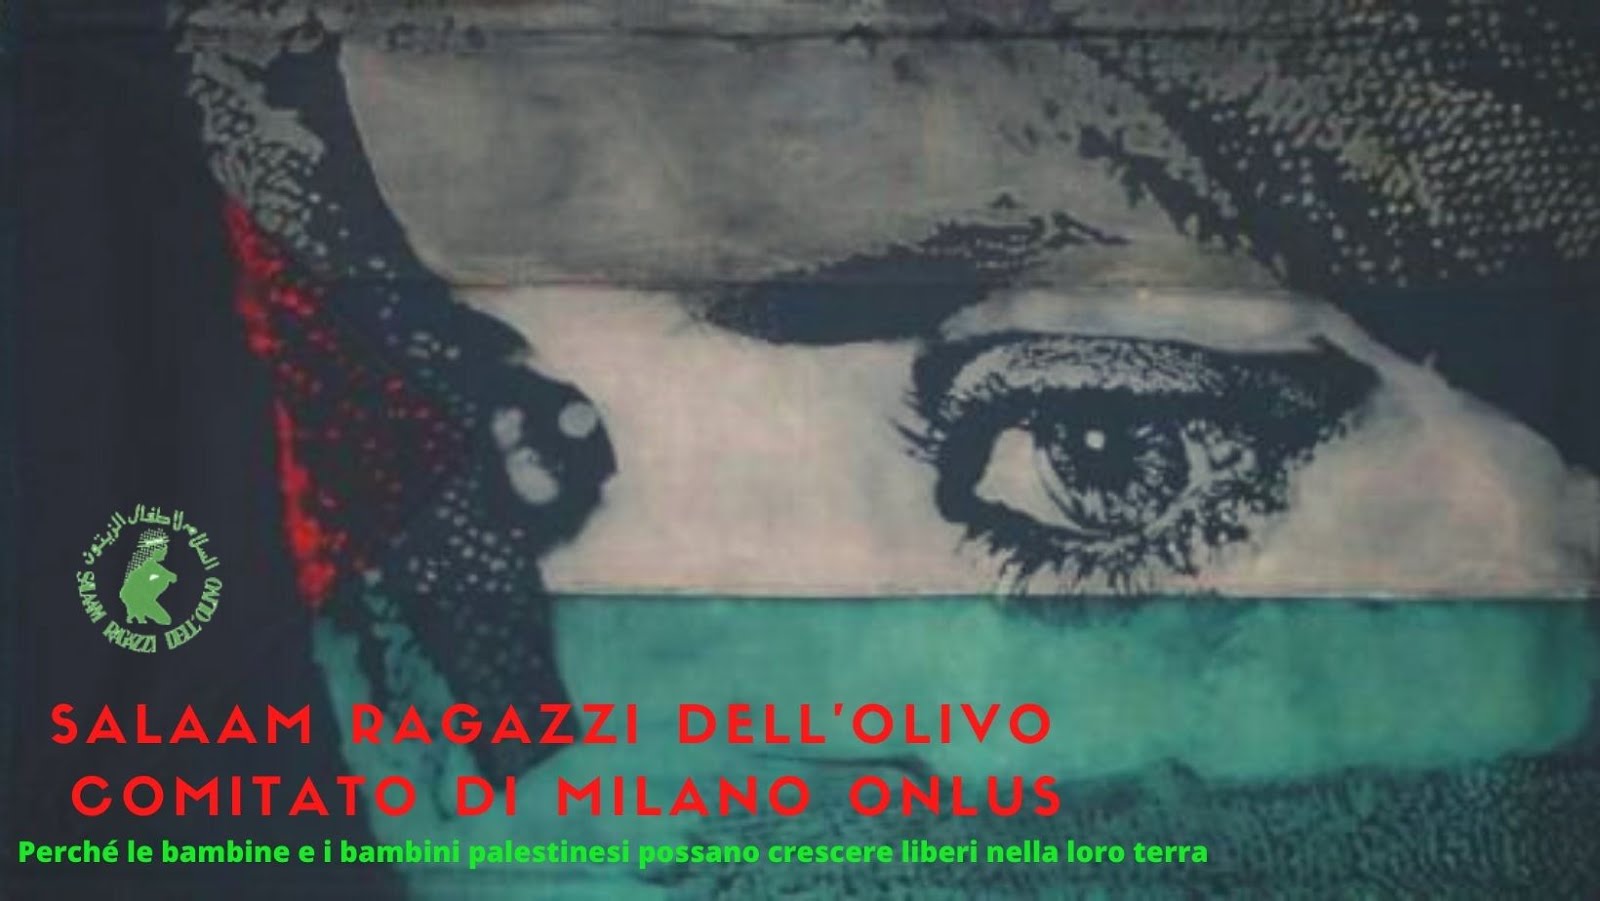 Salaam Ragazzi dell'Olivo Comitato di Milano Onlus